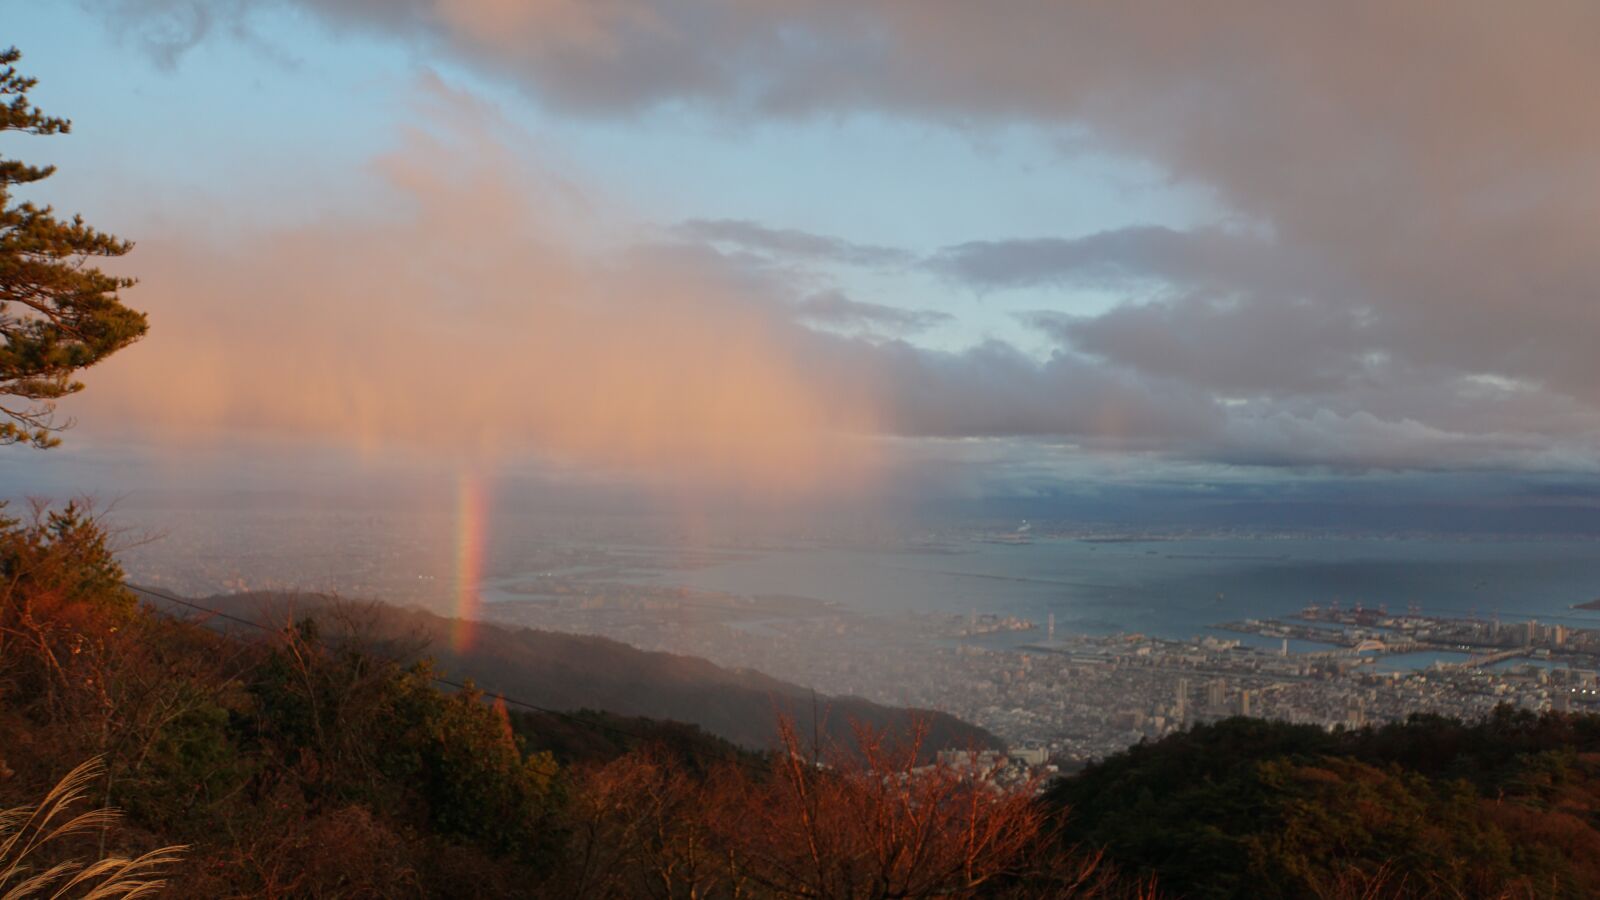 Sony a6000 + Sony E 18-200mm F3.5-6.3 OSS LE sample photo. Kobe, rokko mountain, rainbow photography